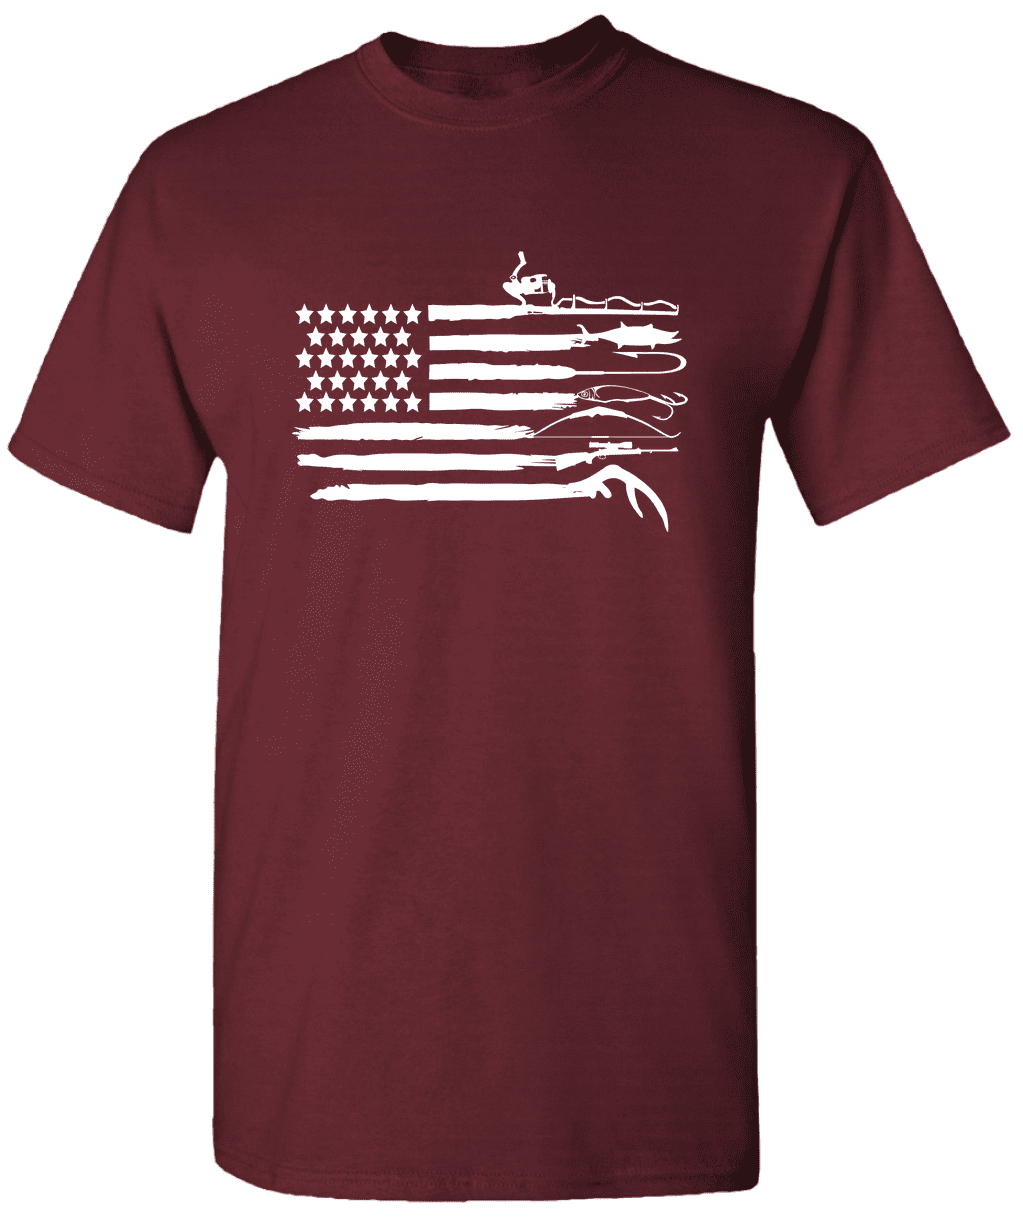 Fishing T-Shirt, Kayak Fishing, American Flag, America, Kayak, Fishing,  Fishing Clothing, Clothing, Apparel, T-Shirt, Shirt T-Shirt Fishing SVG